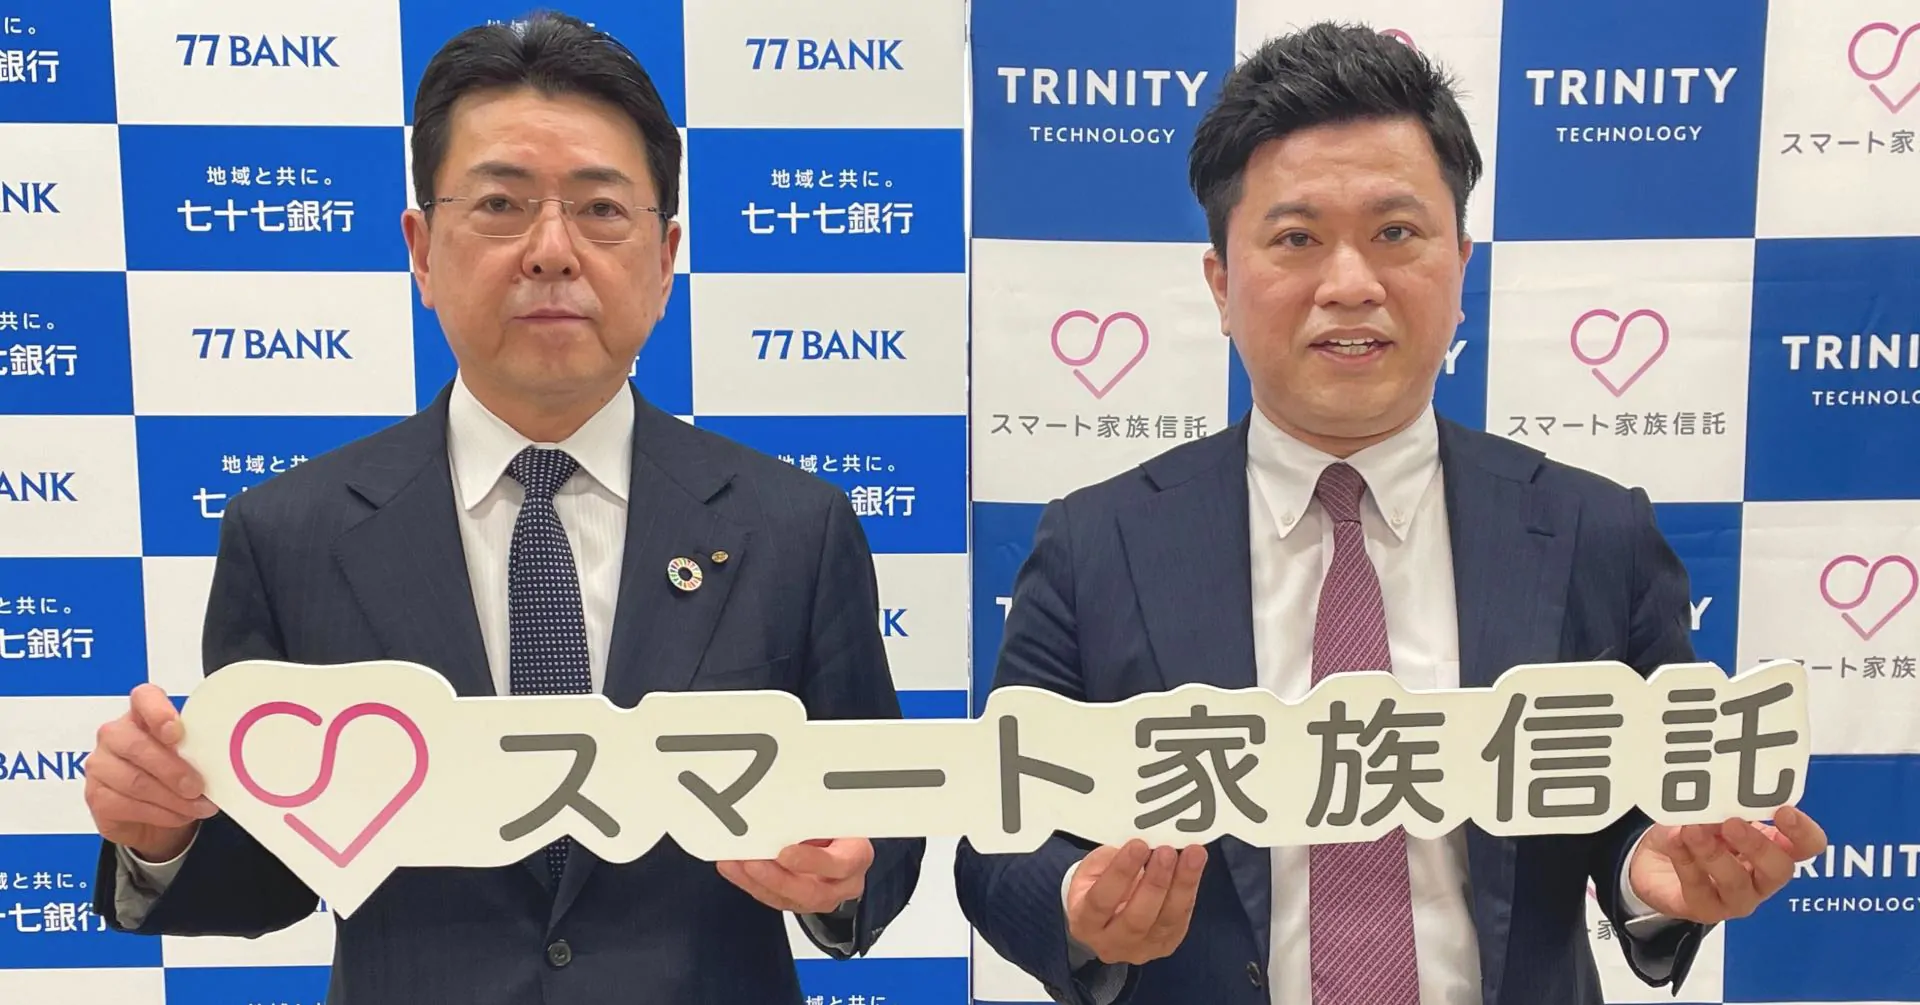 「スマート家族信託」のトリニティ・テクノロジーが七十七銀行と業務提携。仙台支社を新たに開設し、東北地方での家族信託の普及に取り組む